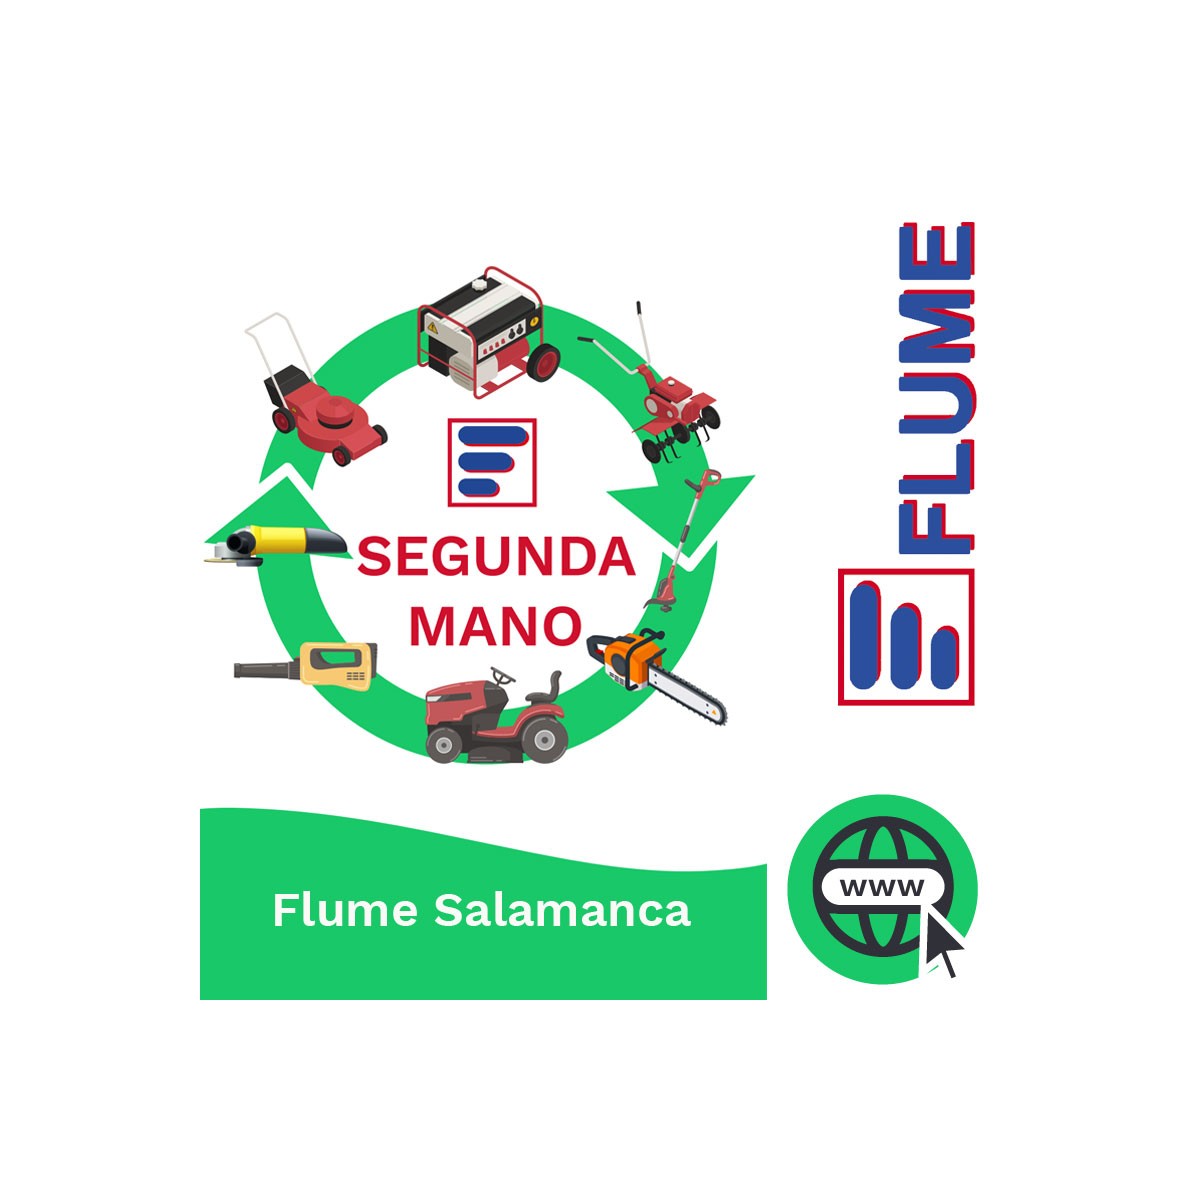 La gama más amplia de máquinas de segunda mano en Flume Salamanca. Completamente revisadas